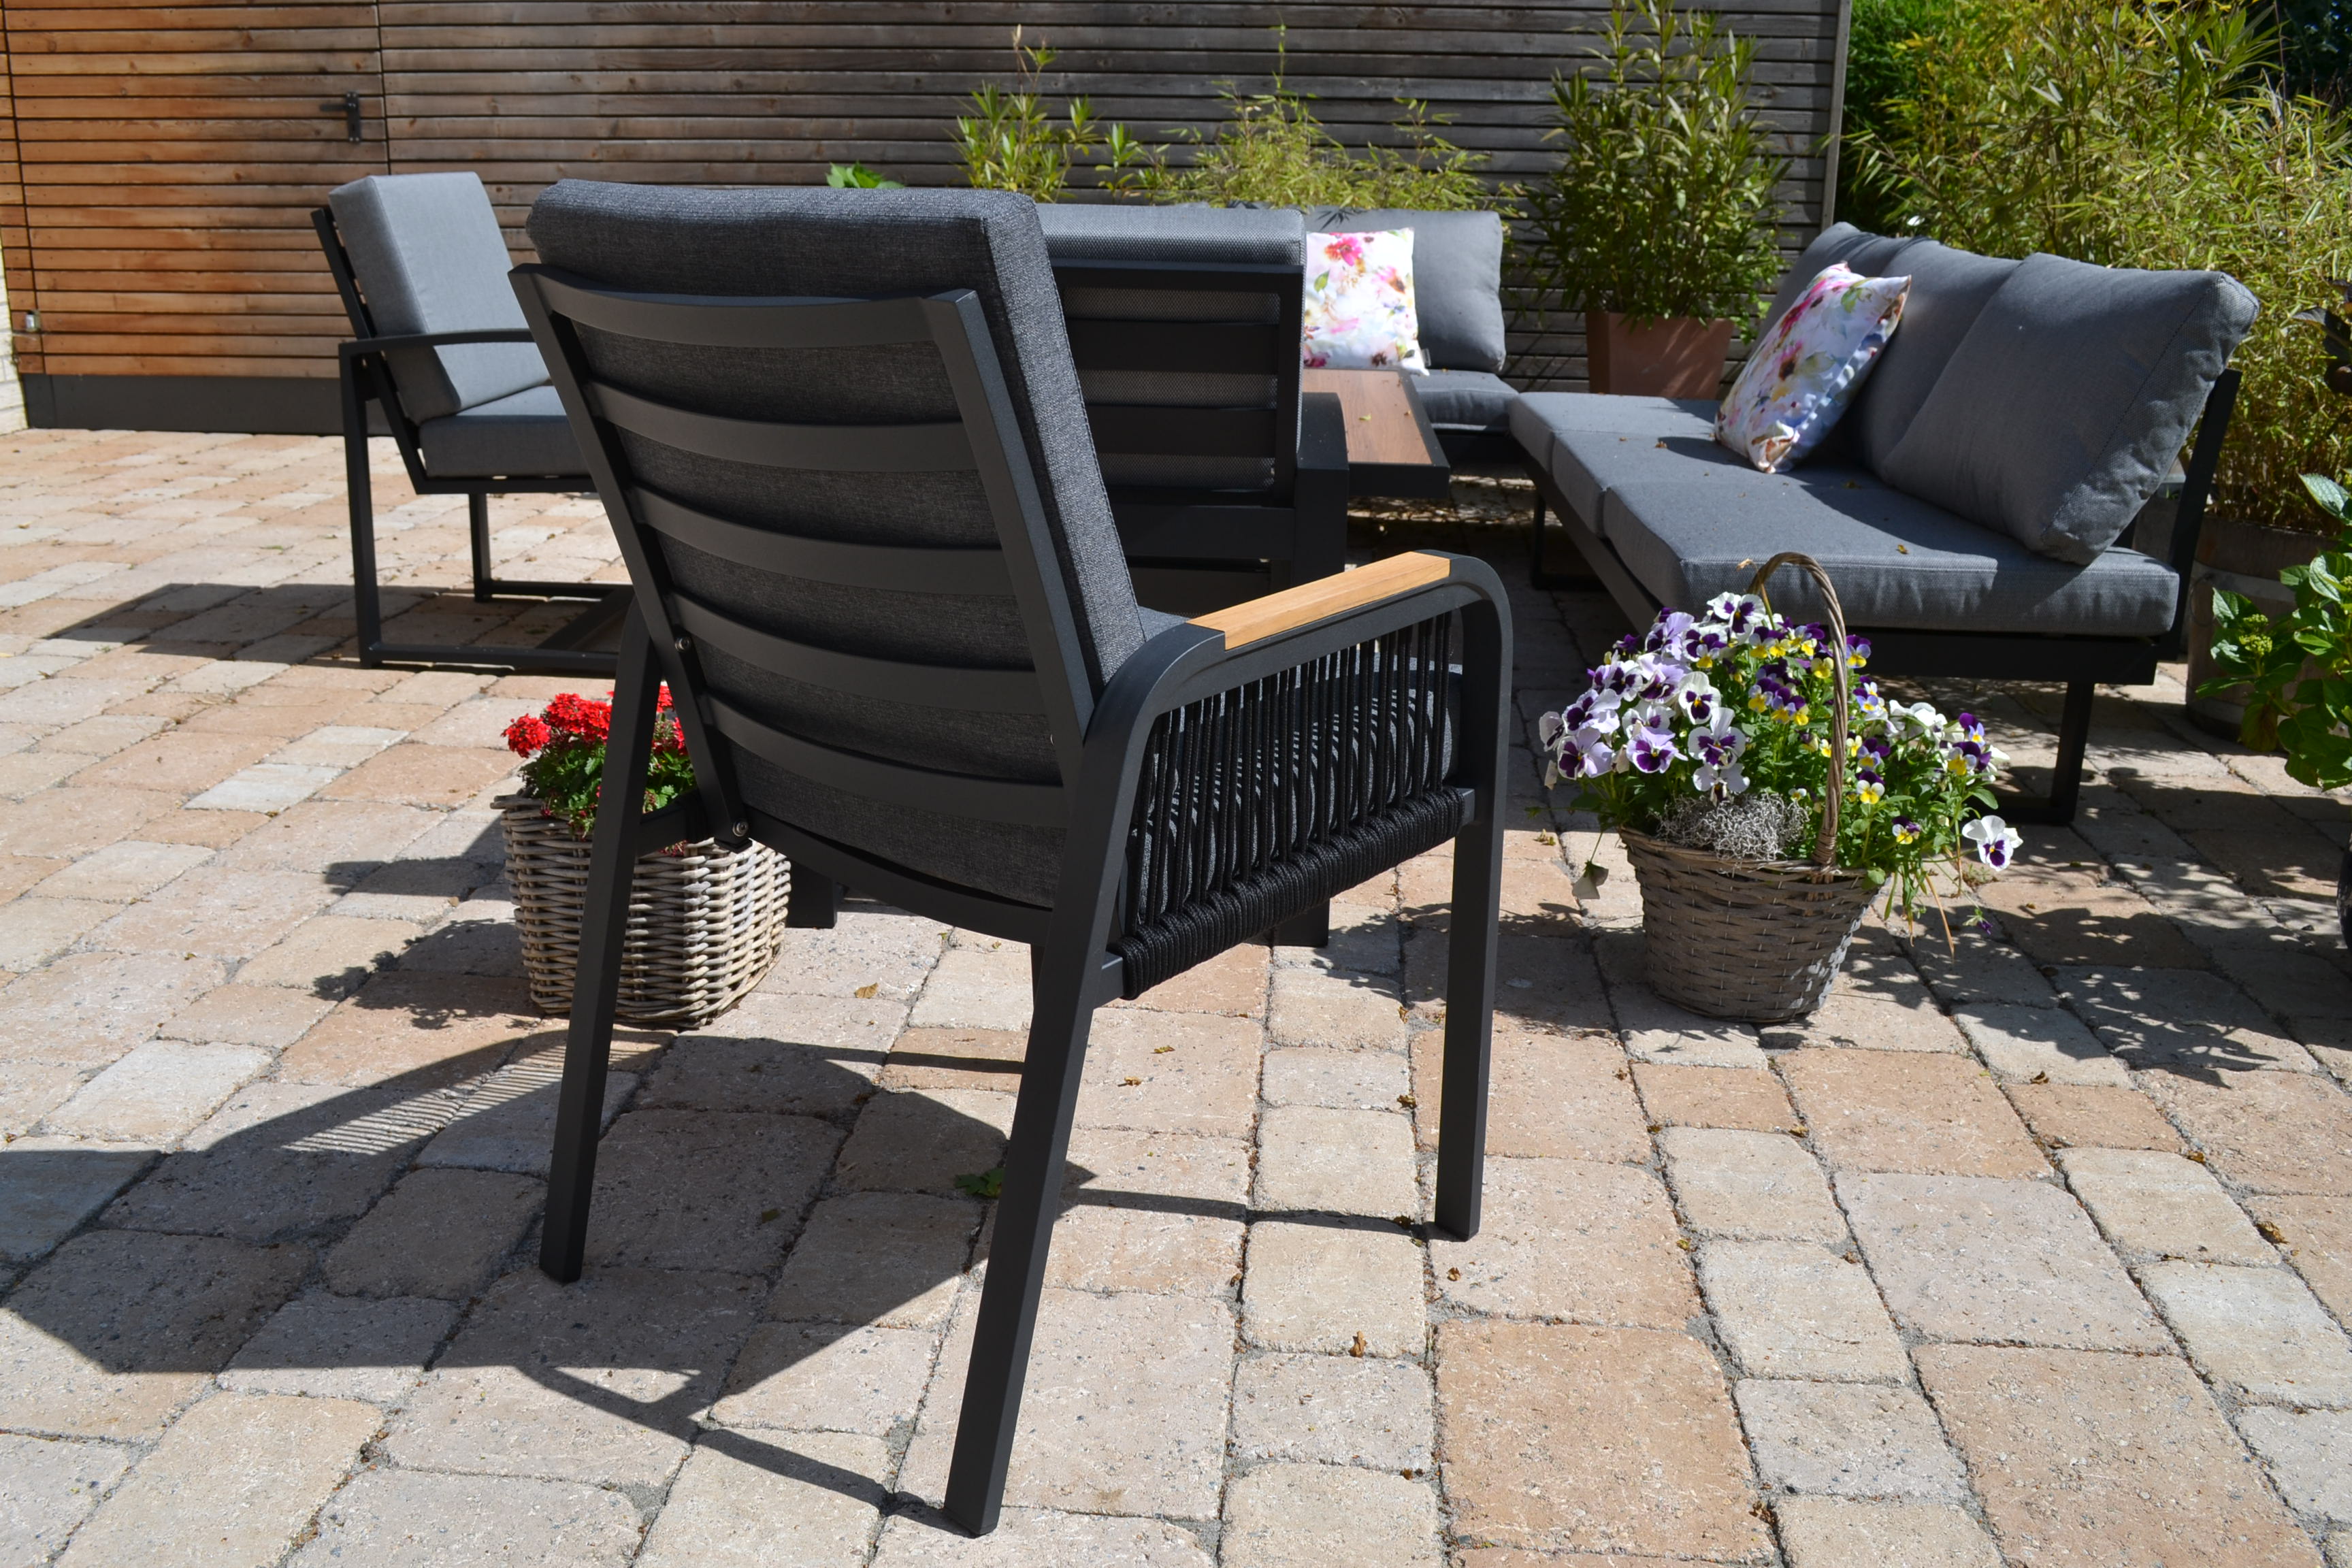 6 x Gartenstuhl Robin mit Sitz- und Rückenpolster im eleganten Seil Design